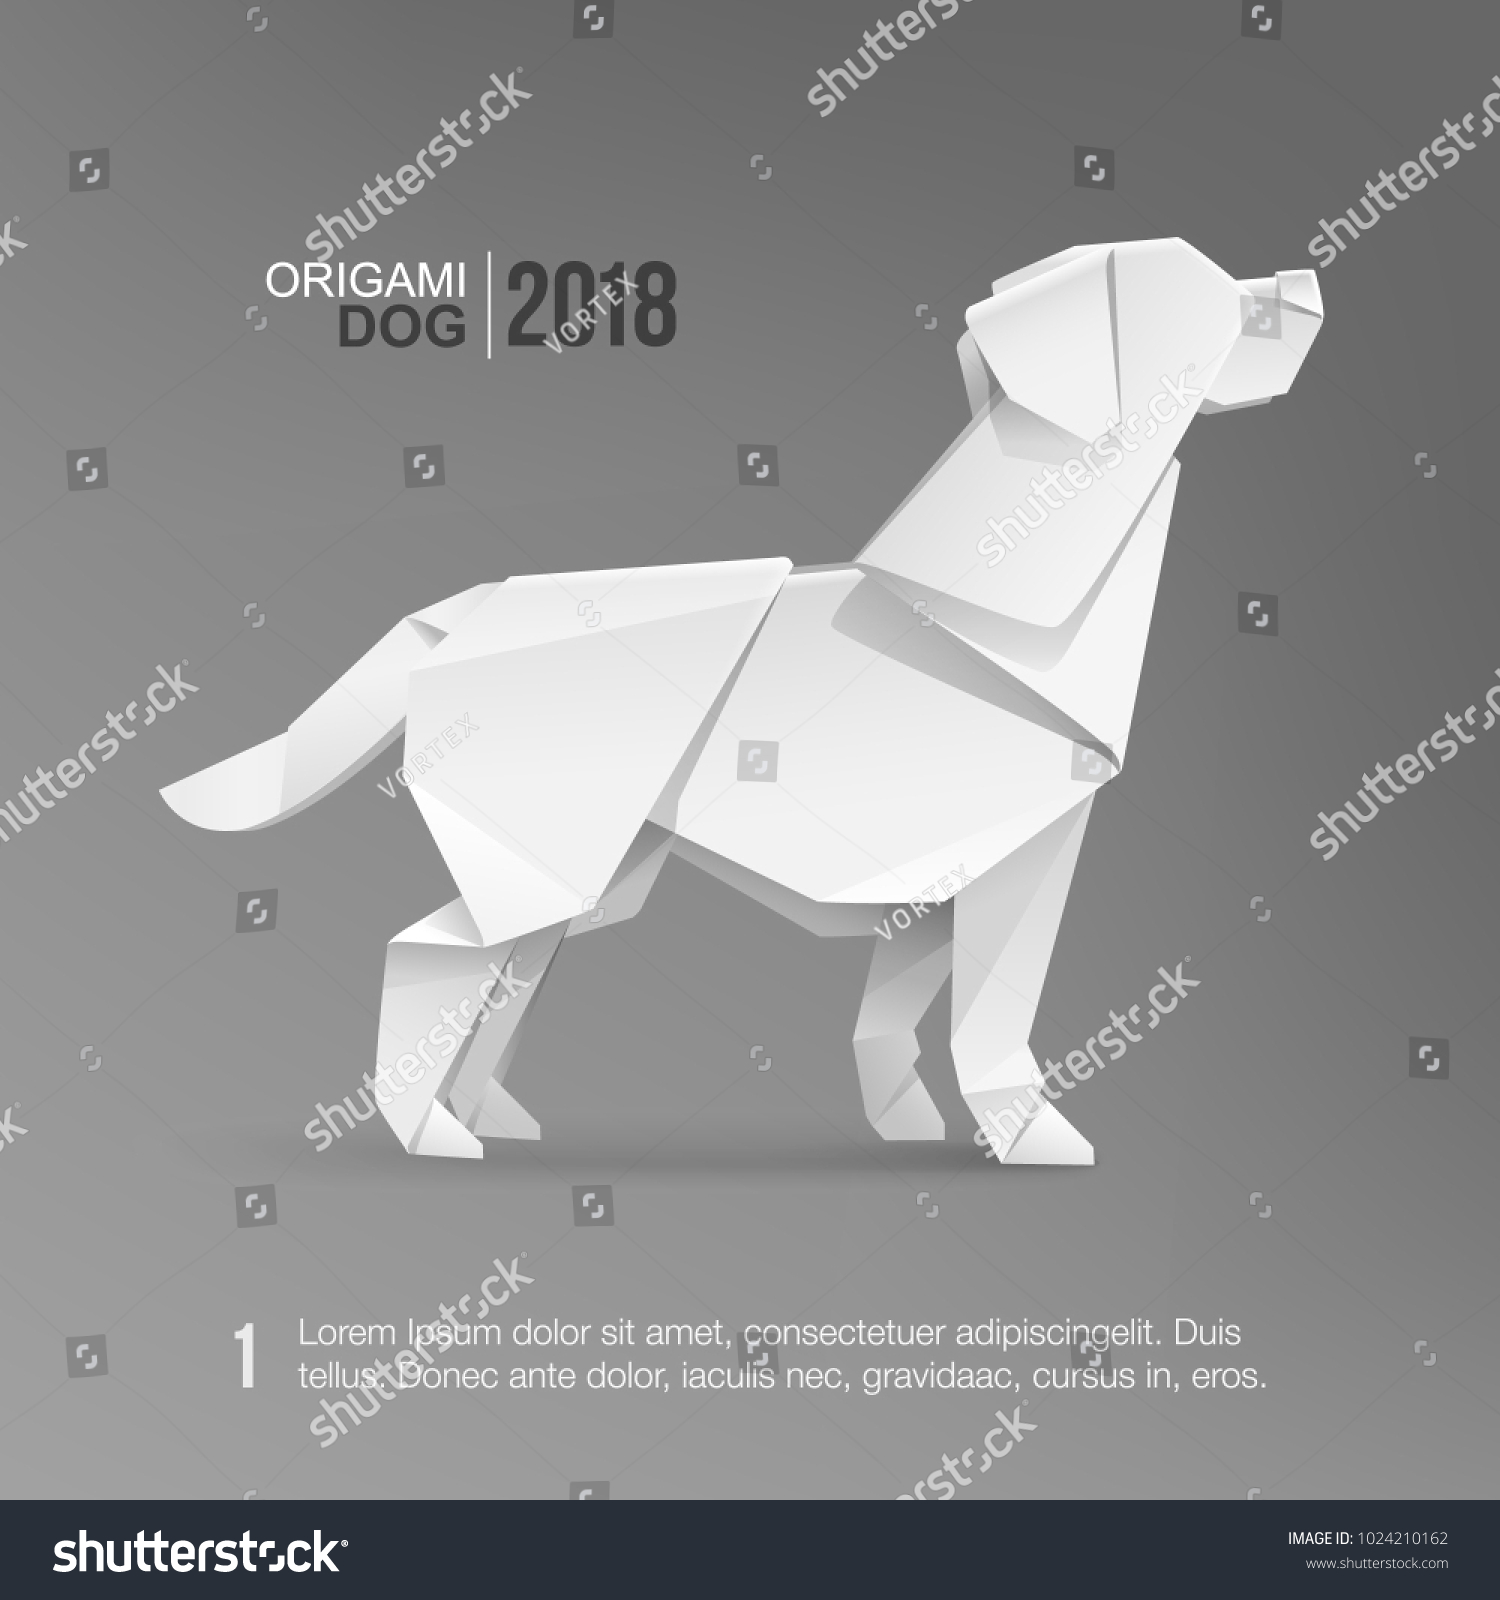 グレイの背景に折り紙の白い犬のベクター画像テンプレート カバーデザイン用のリアルな3dドッグペットテンプレート 幾何学的なスタイルの犬のアイコン 18年の中国の新年のシンボル のベクター画像素材 ロイヤリティフリー